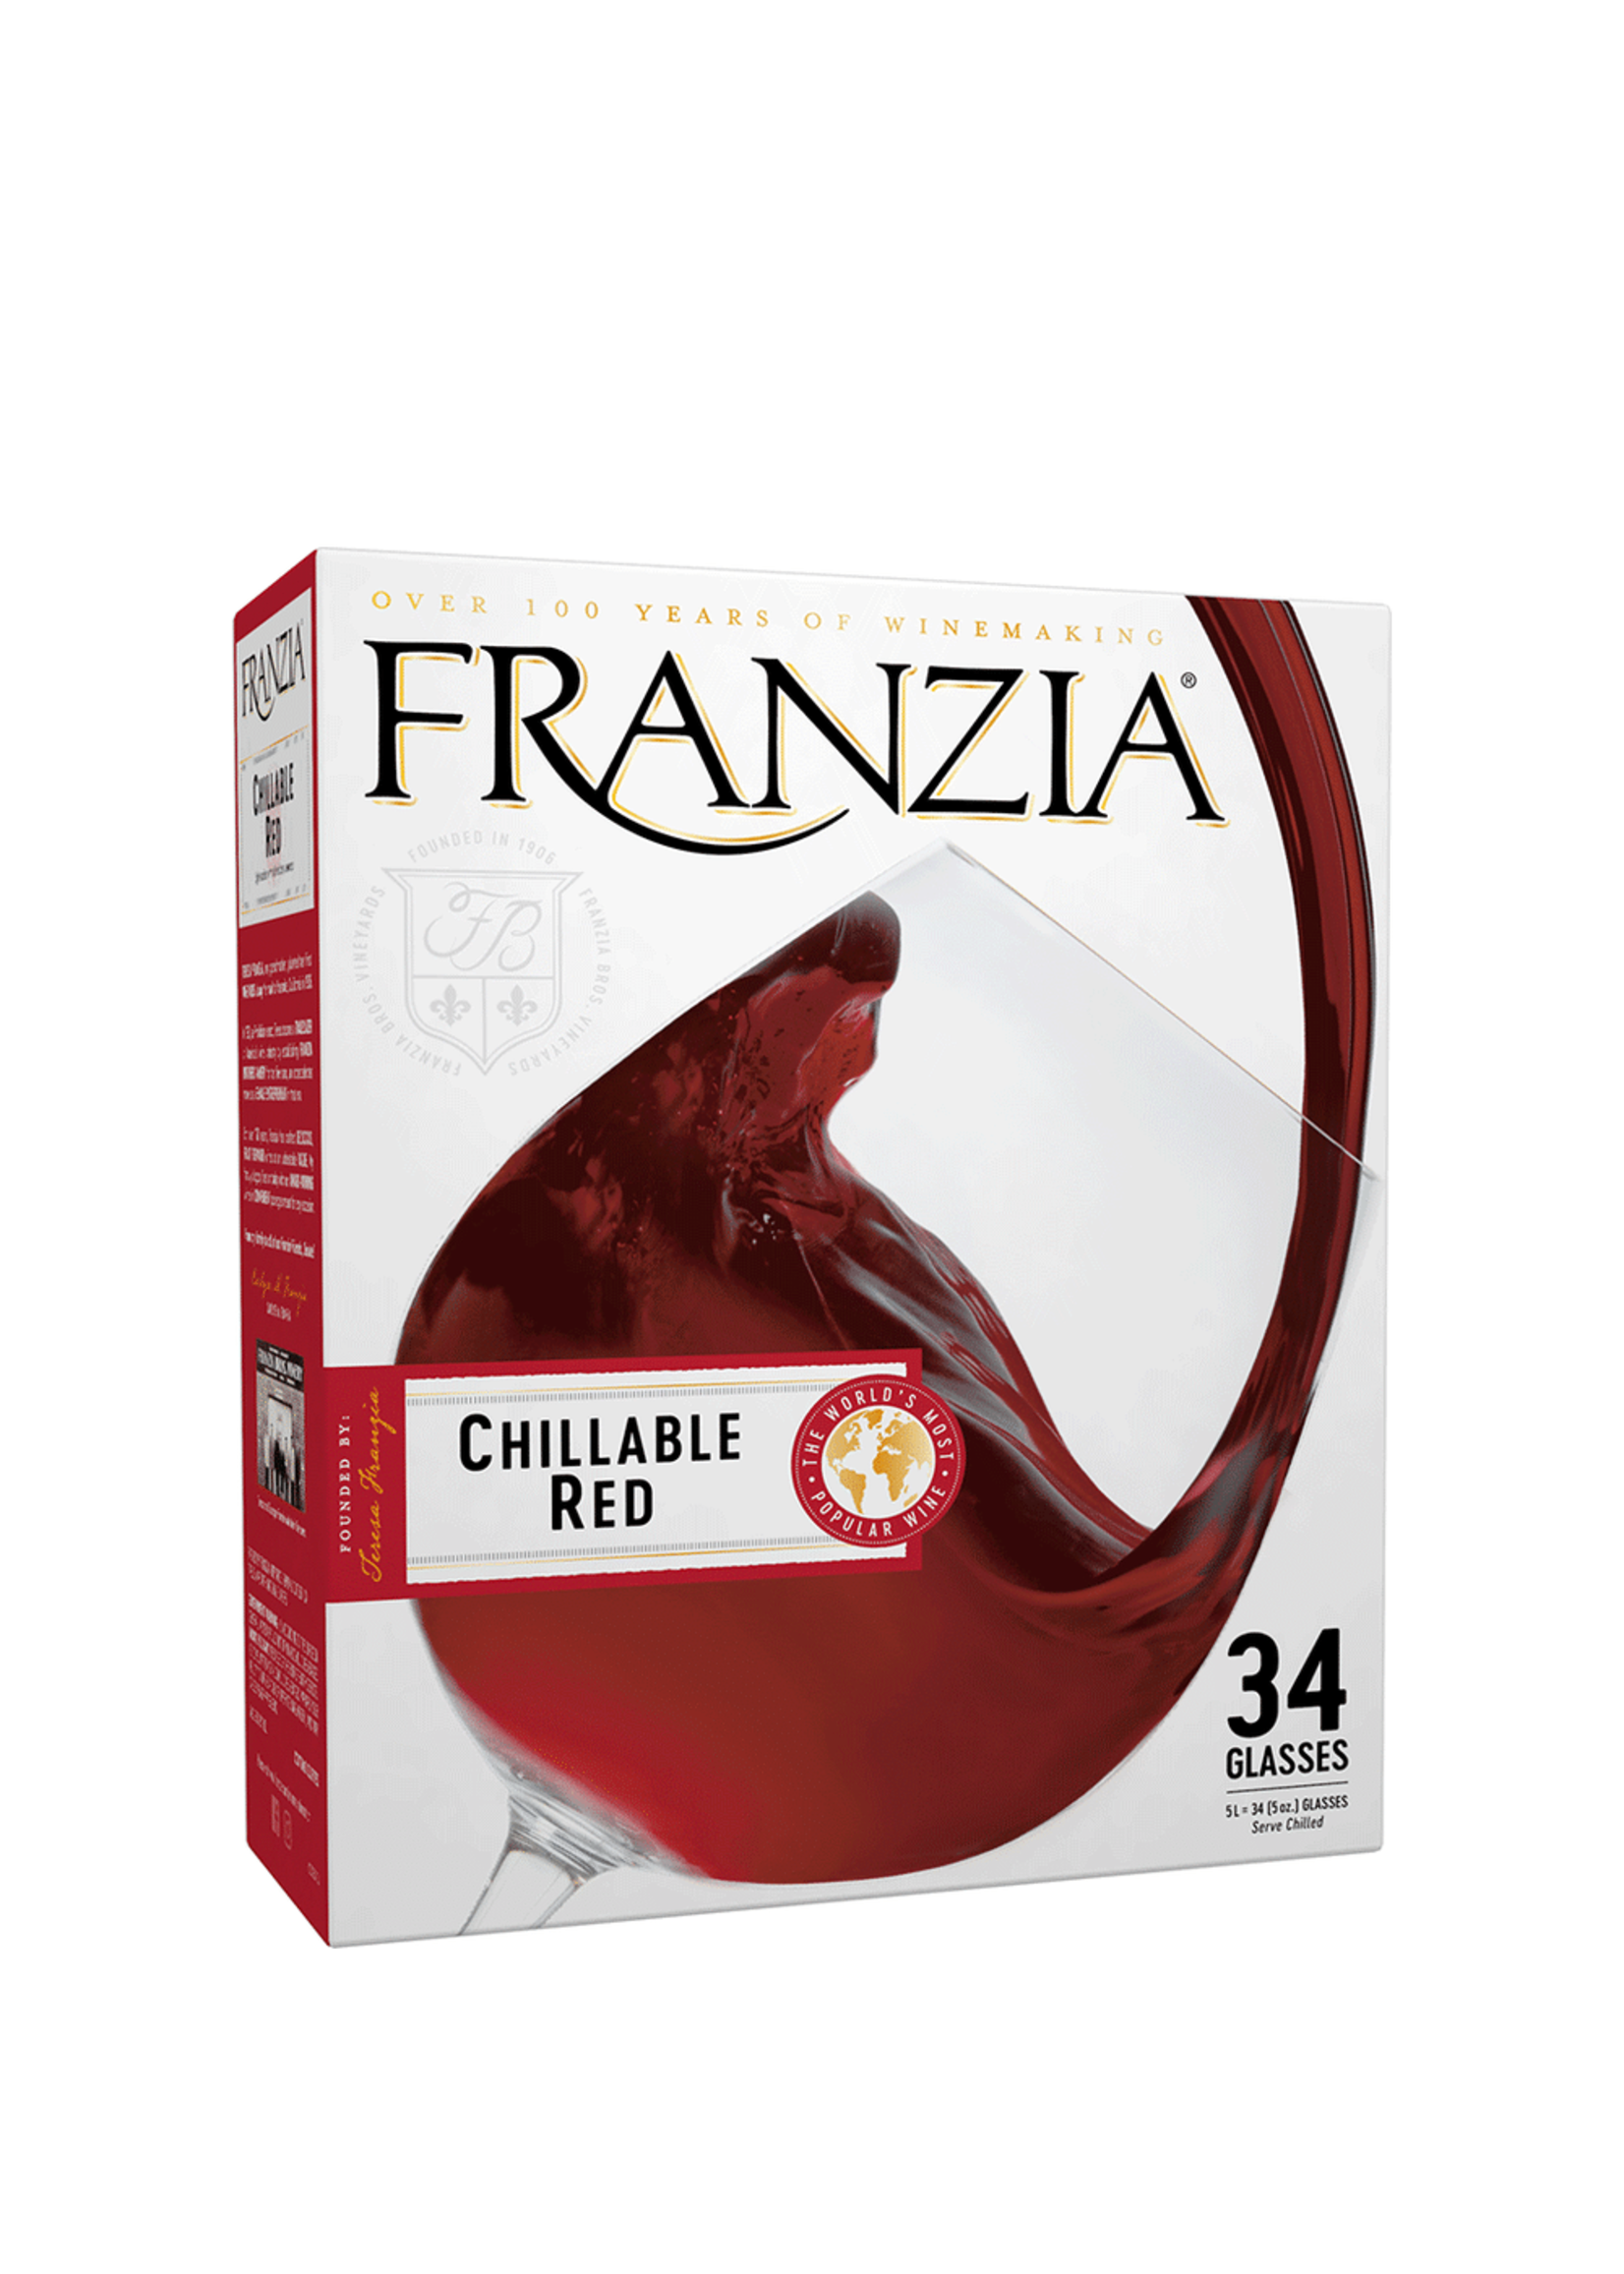 Franzia Chill Red Wine Box 5 Ltr